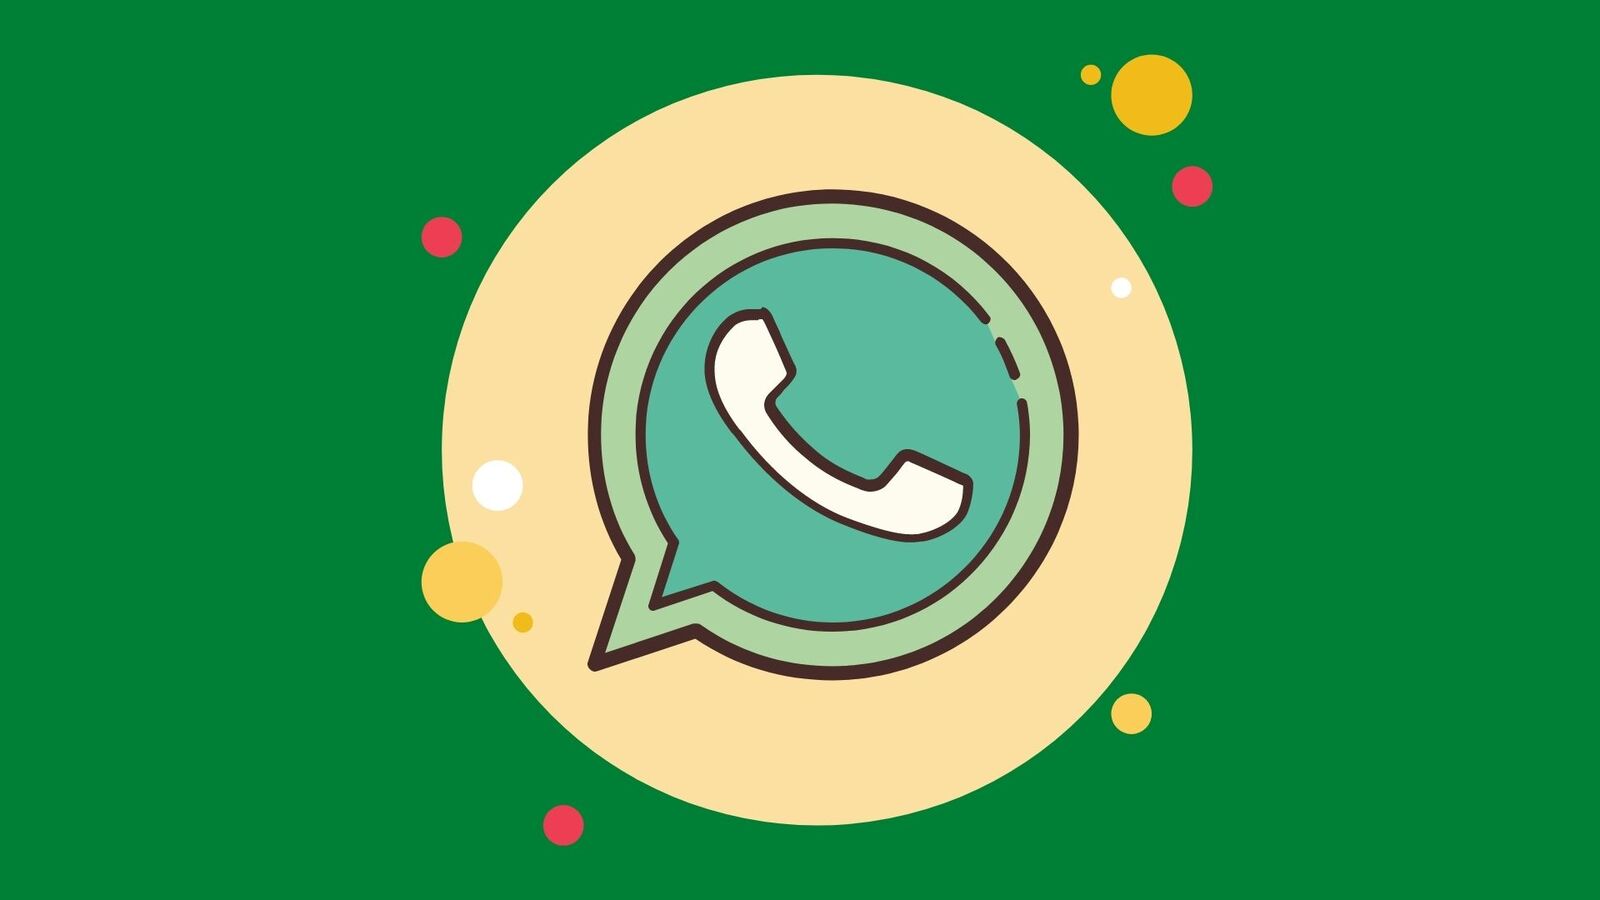 whatsapp-ora-potrai-trasferire-le-chat-sul-nuovo-smartphone-in-maniera-veloce